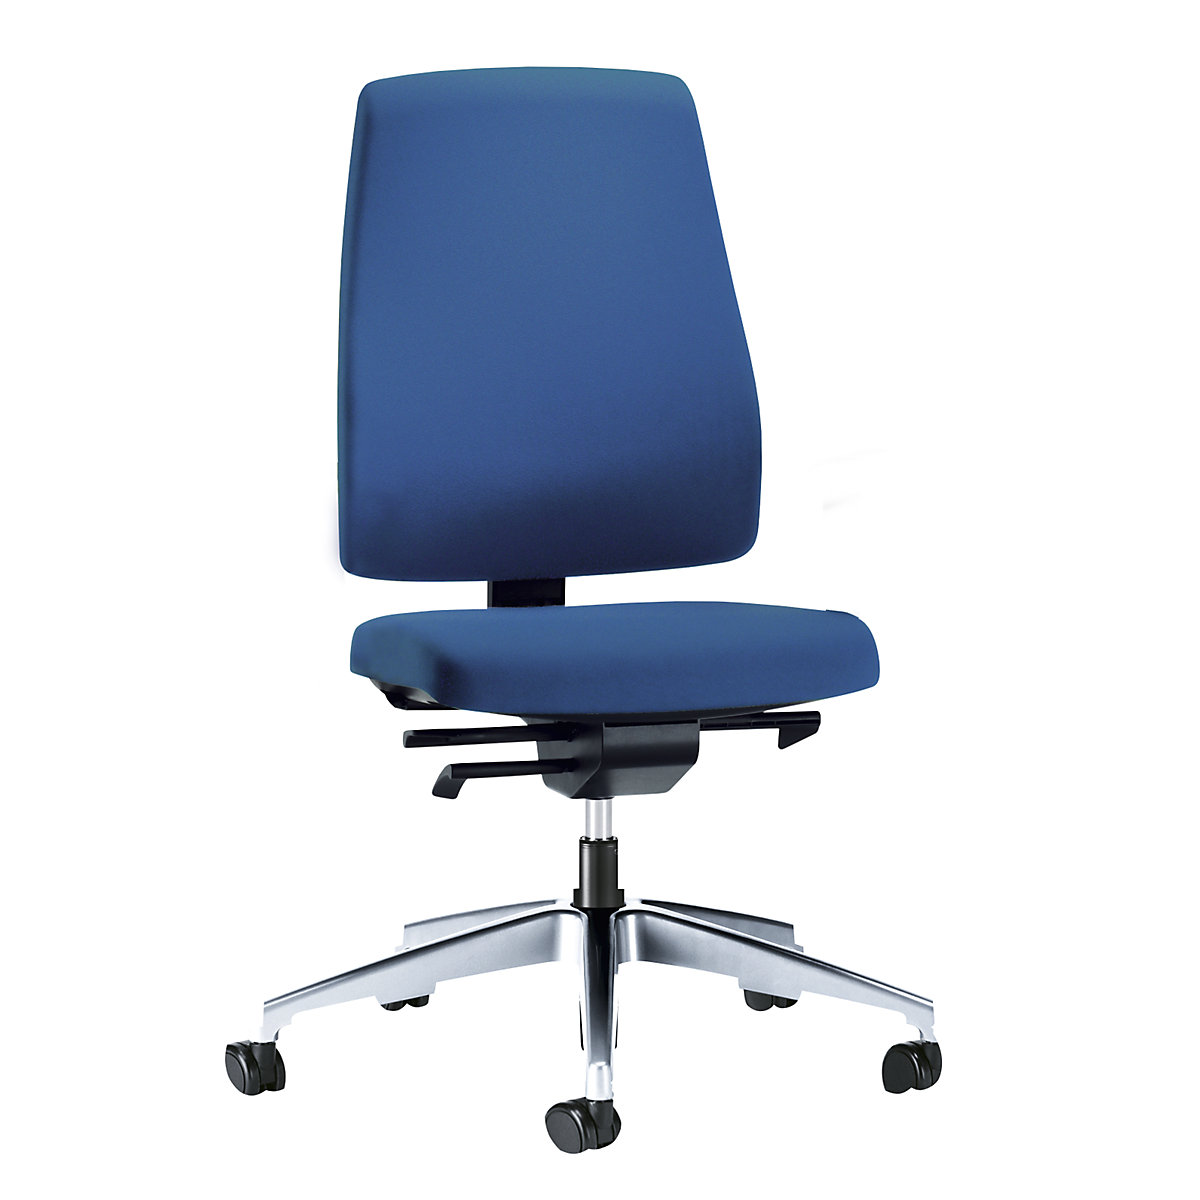 Obrotowe krzesło biurowe GOAL, wys. oparcia 530 mm – interstuhl, szkielet polerowany, z miękkimi rolkami, niebieski gencjanowy, głęb. siedziska: 410 – 460 mm-6